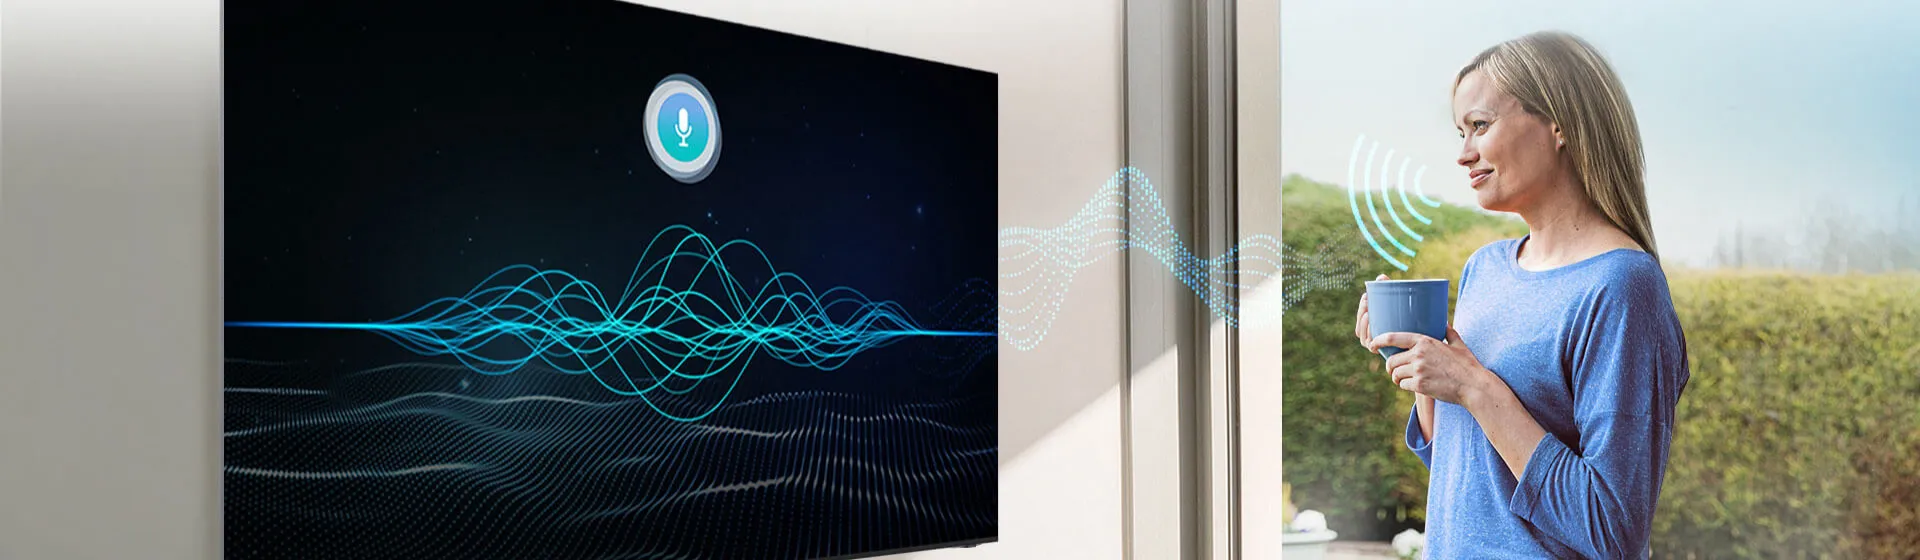 TV com comando de voz: melhores opções com Alexa e Google Assistente